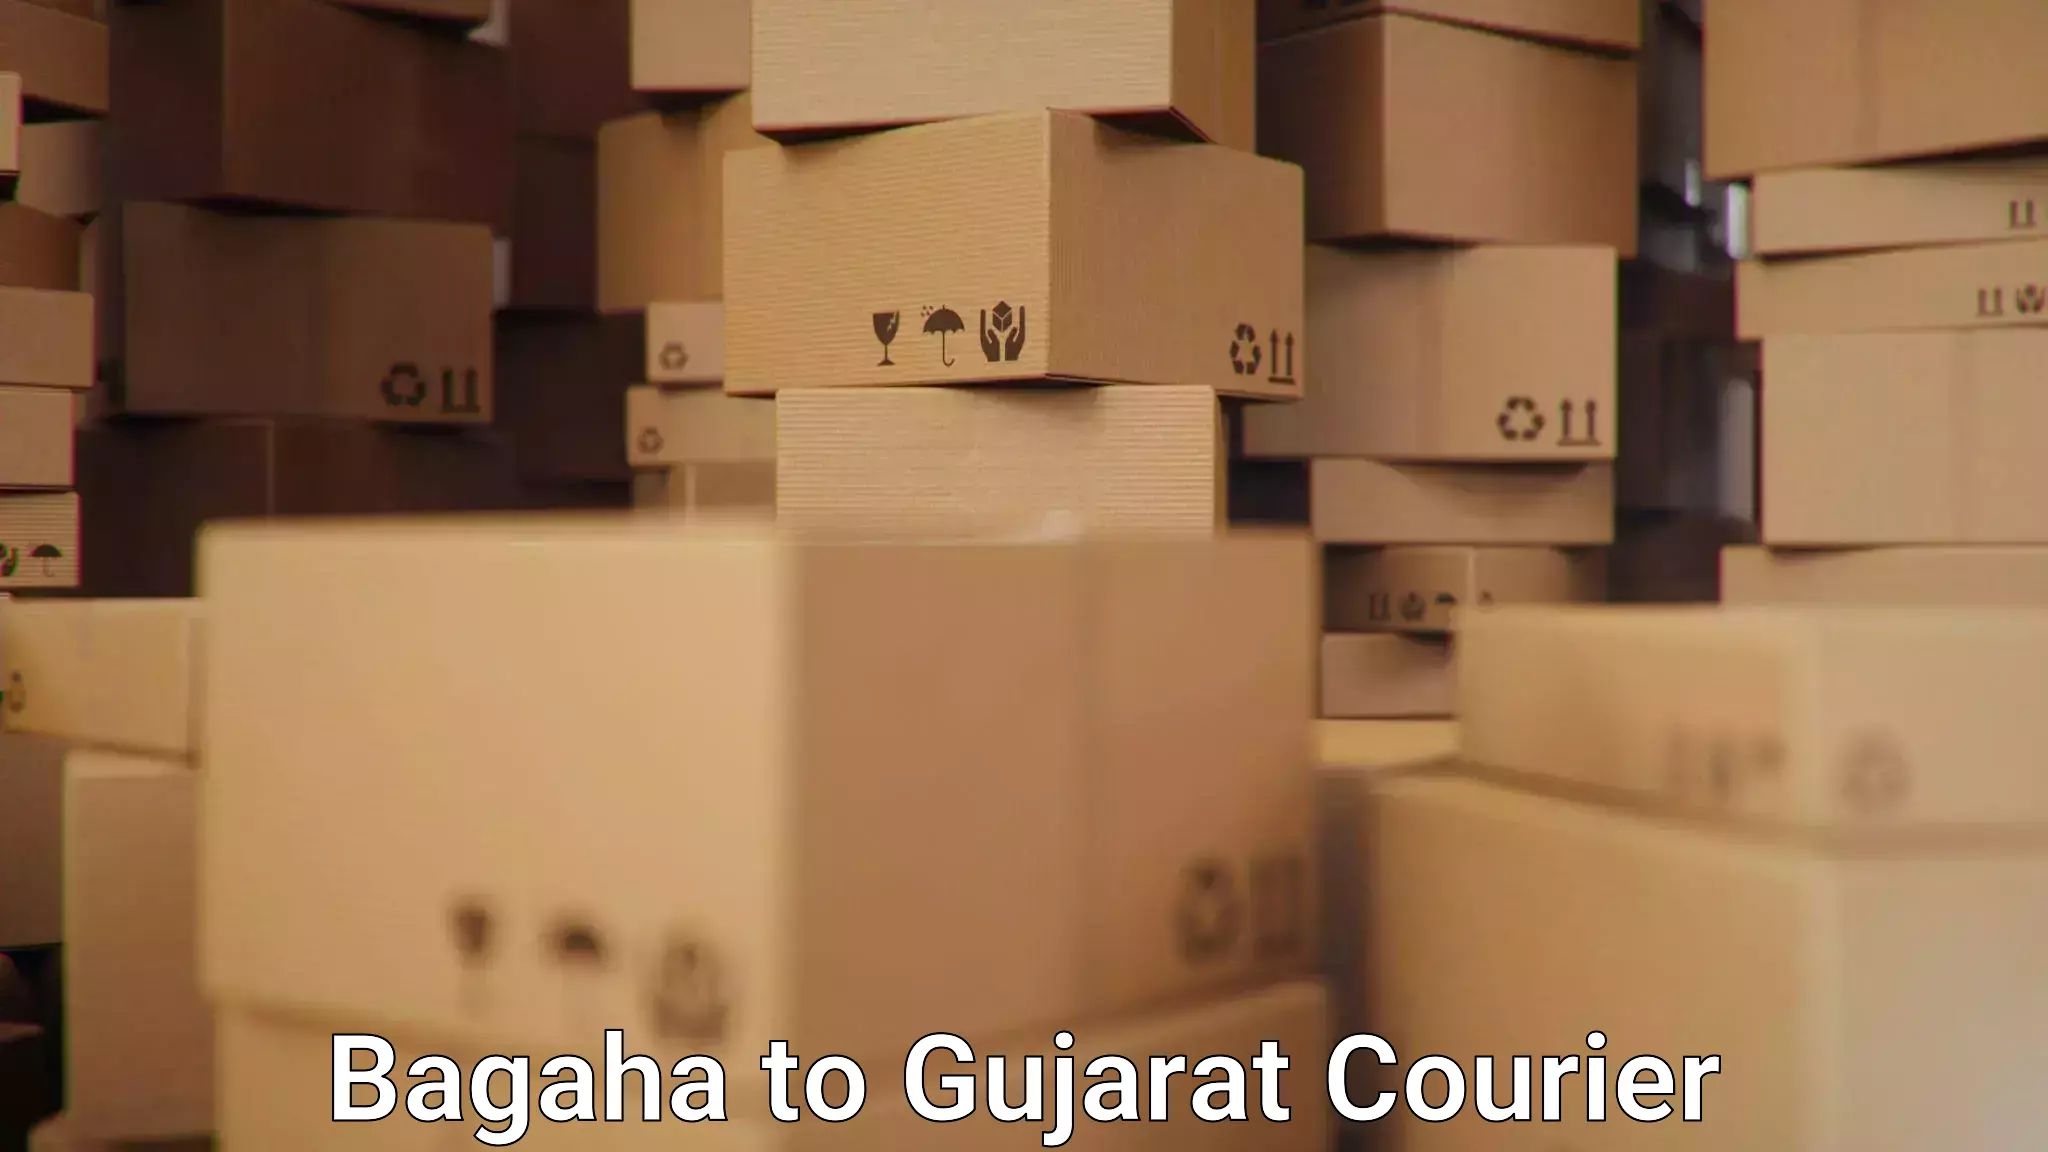 24/7 shipping services Bagaha to Jhagadia